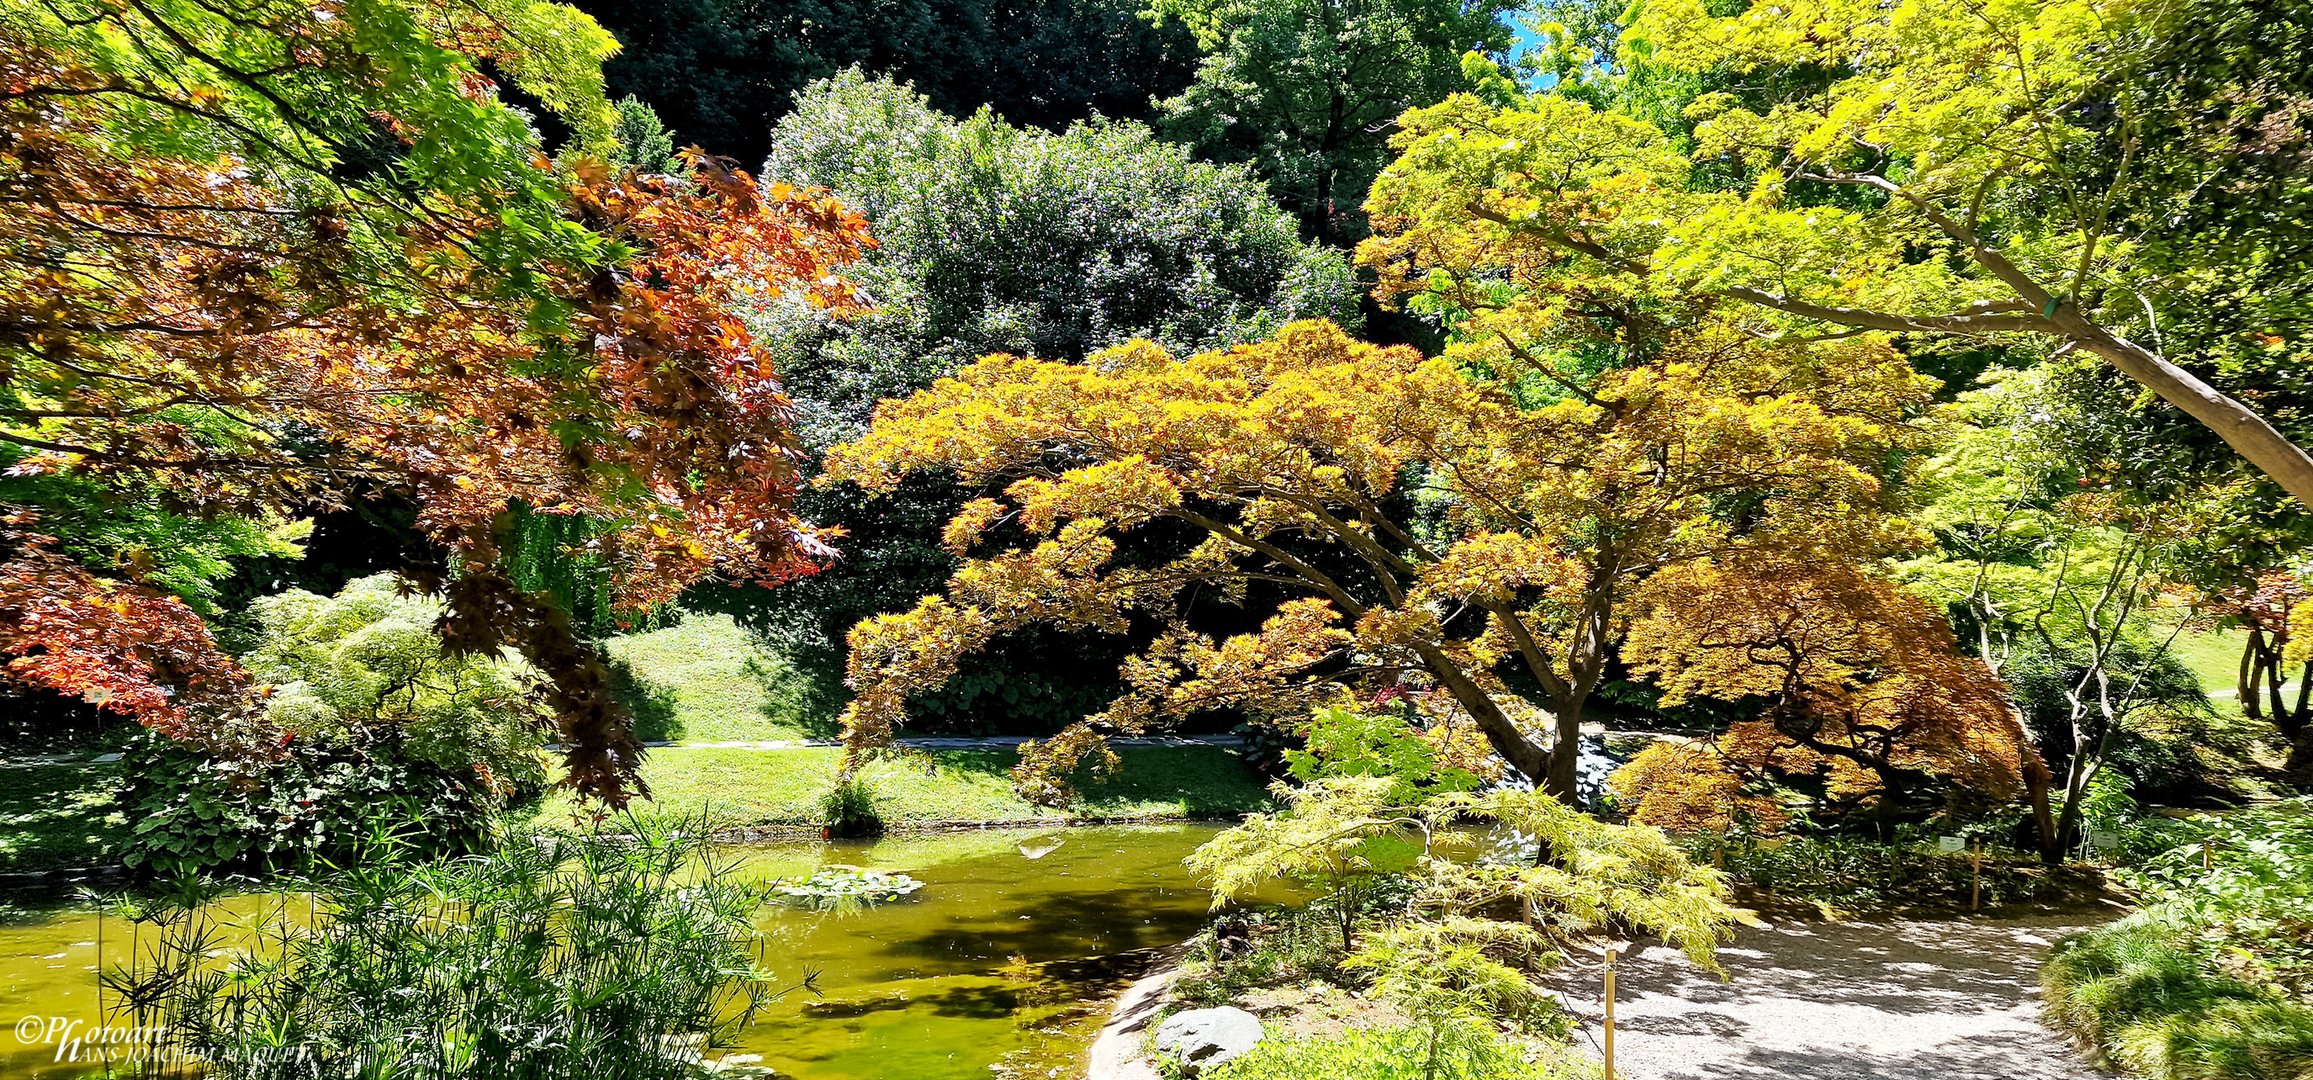 Villa Melzi - Teich im japanischen Stil